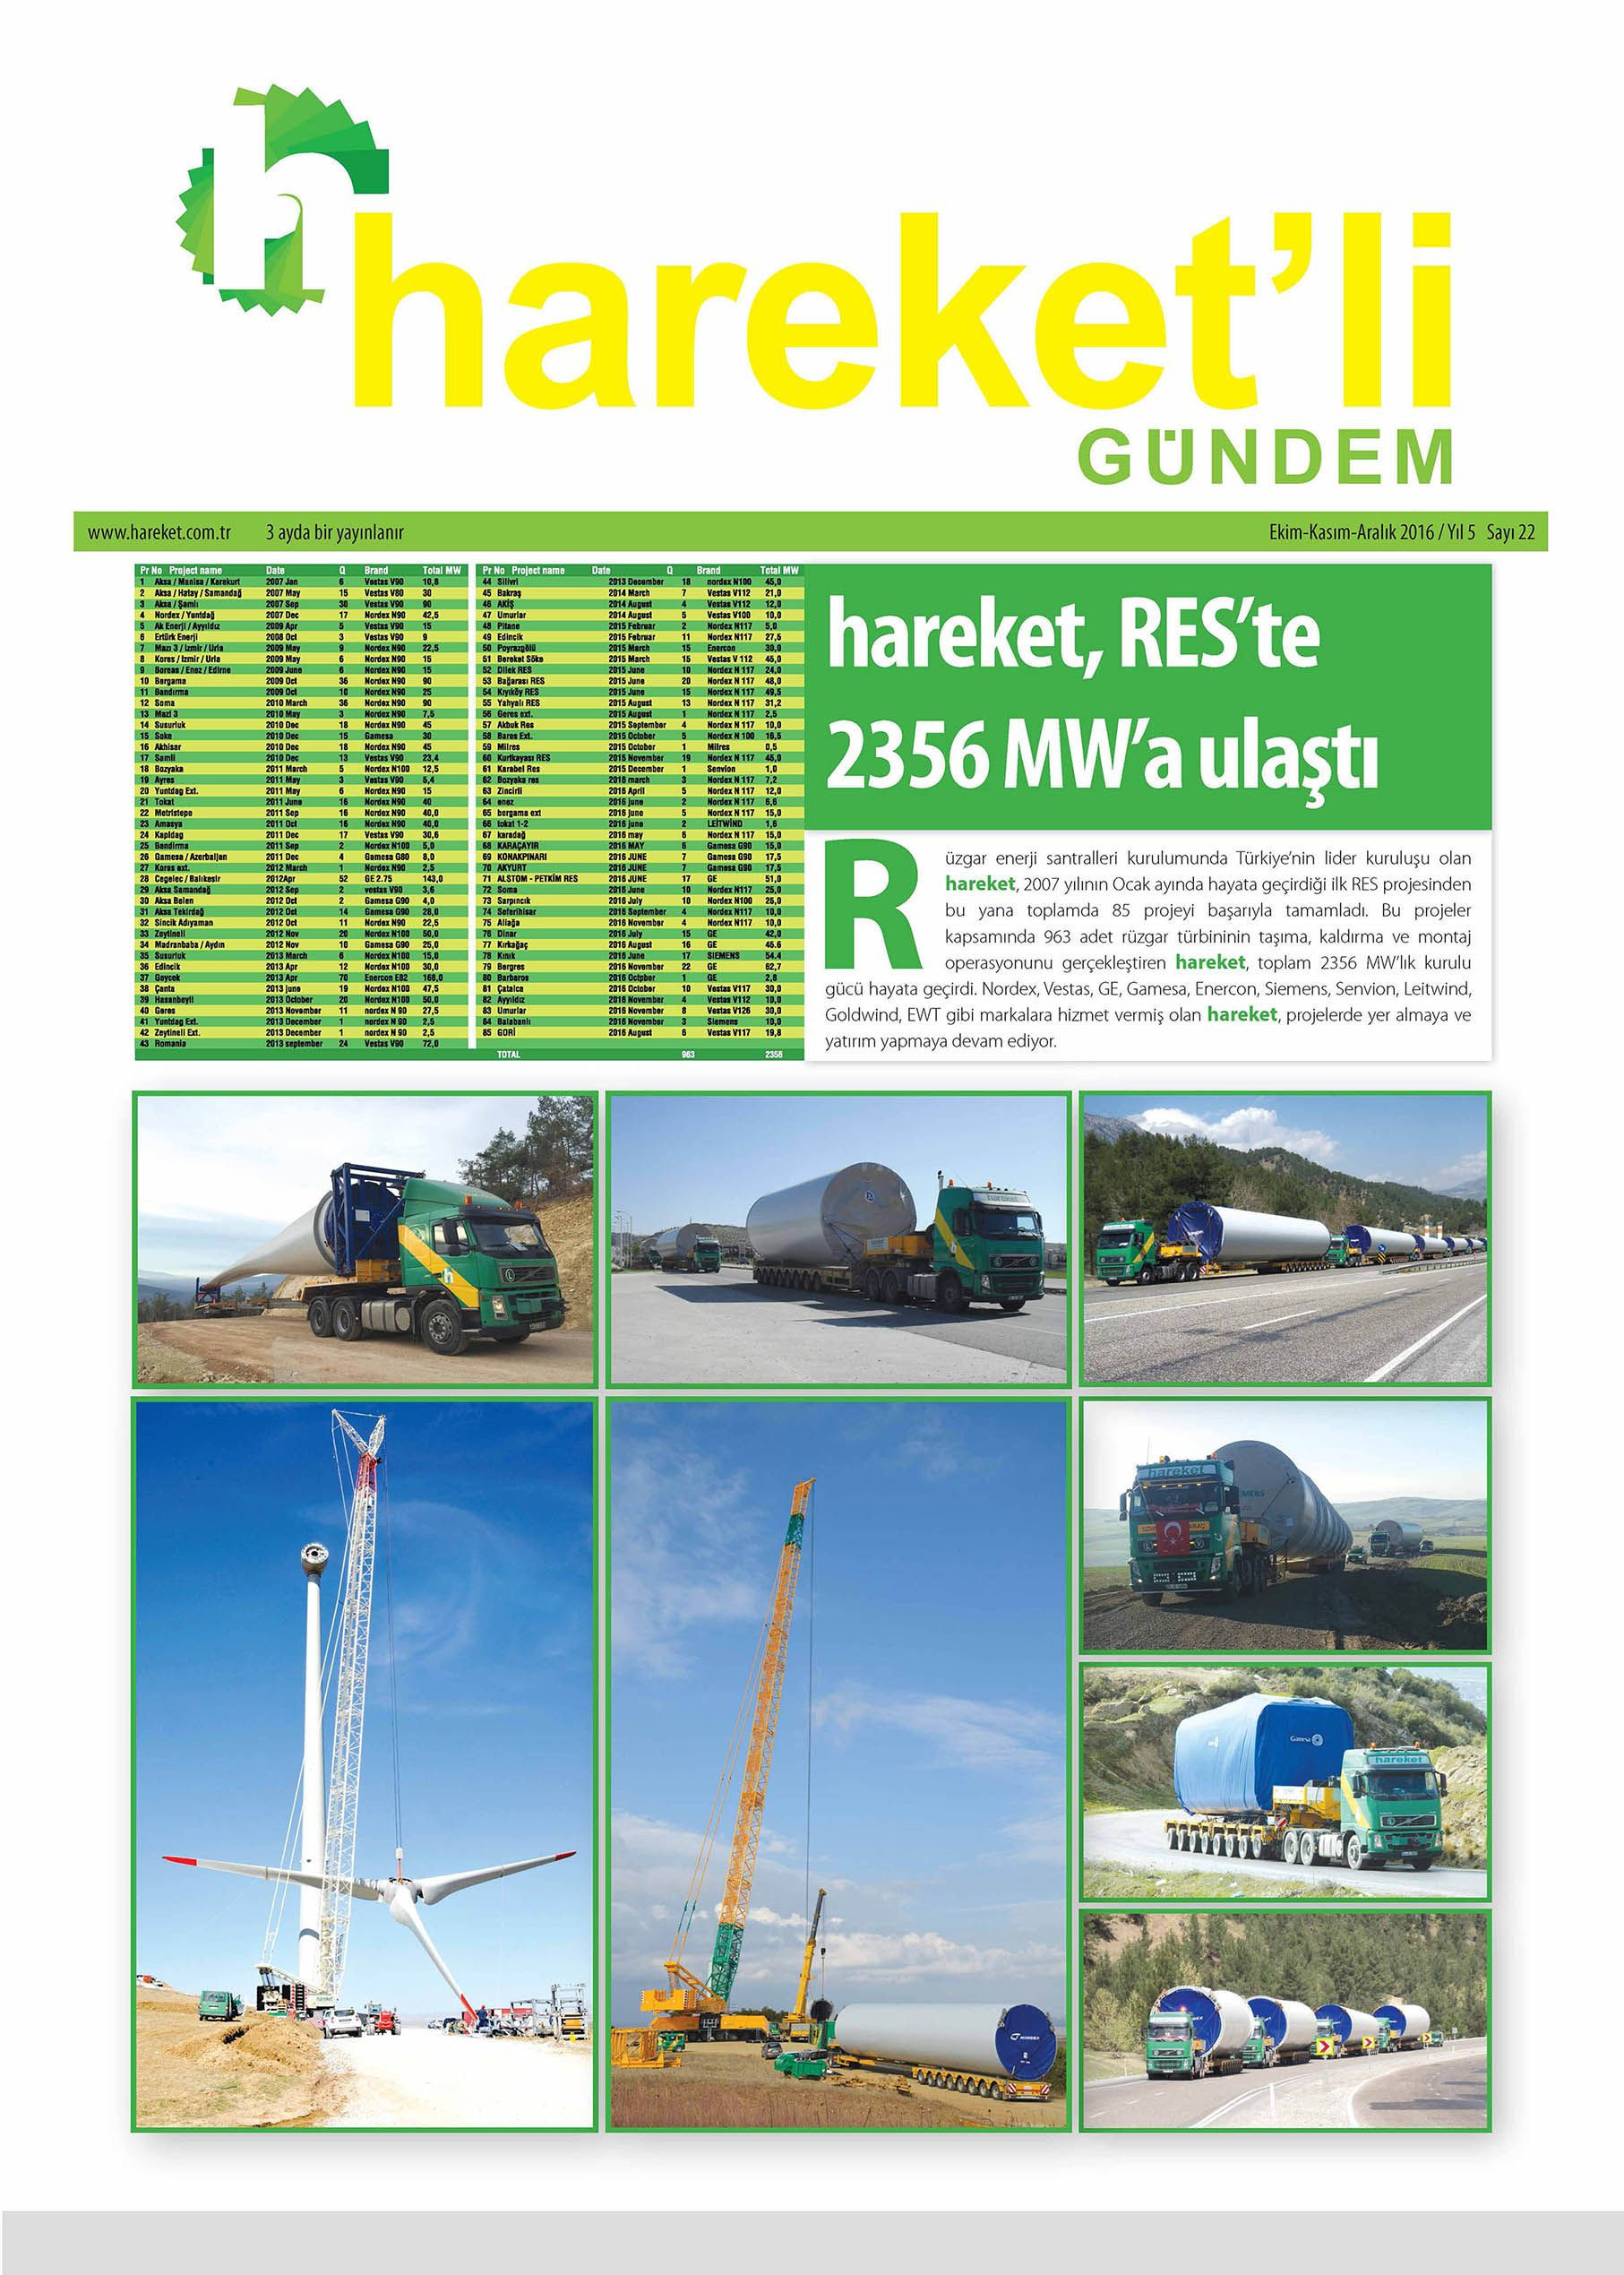 Hareket'li Gündem Magazine - ISSUE 22